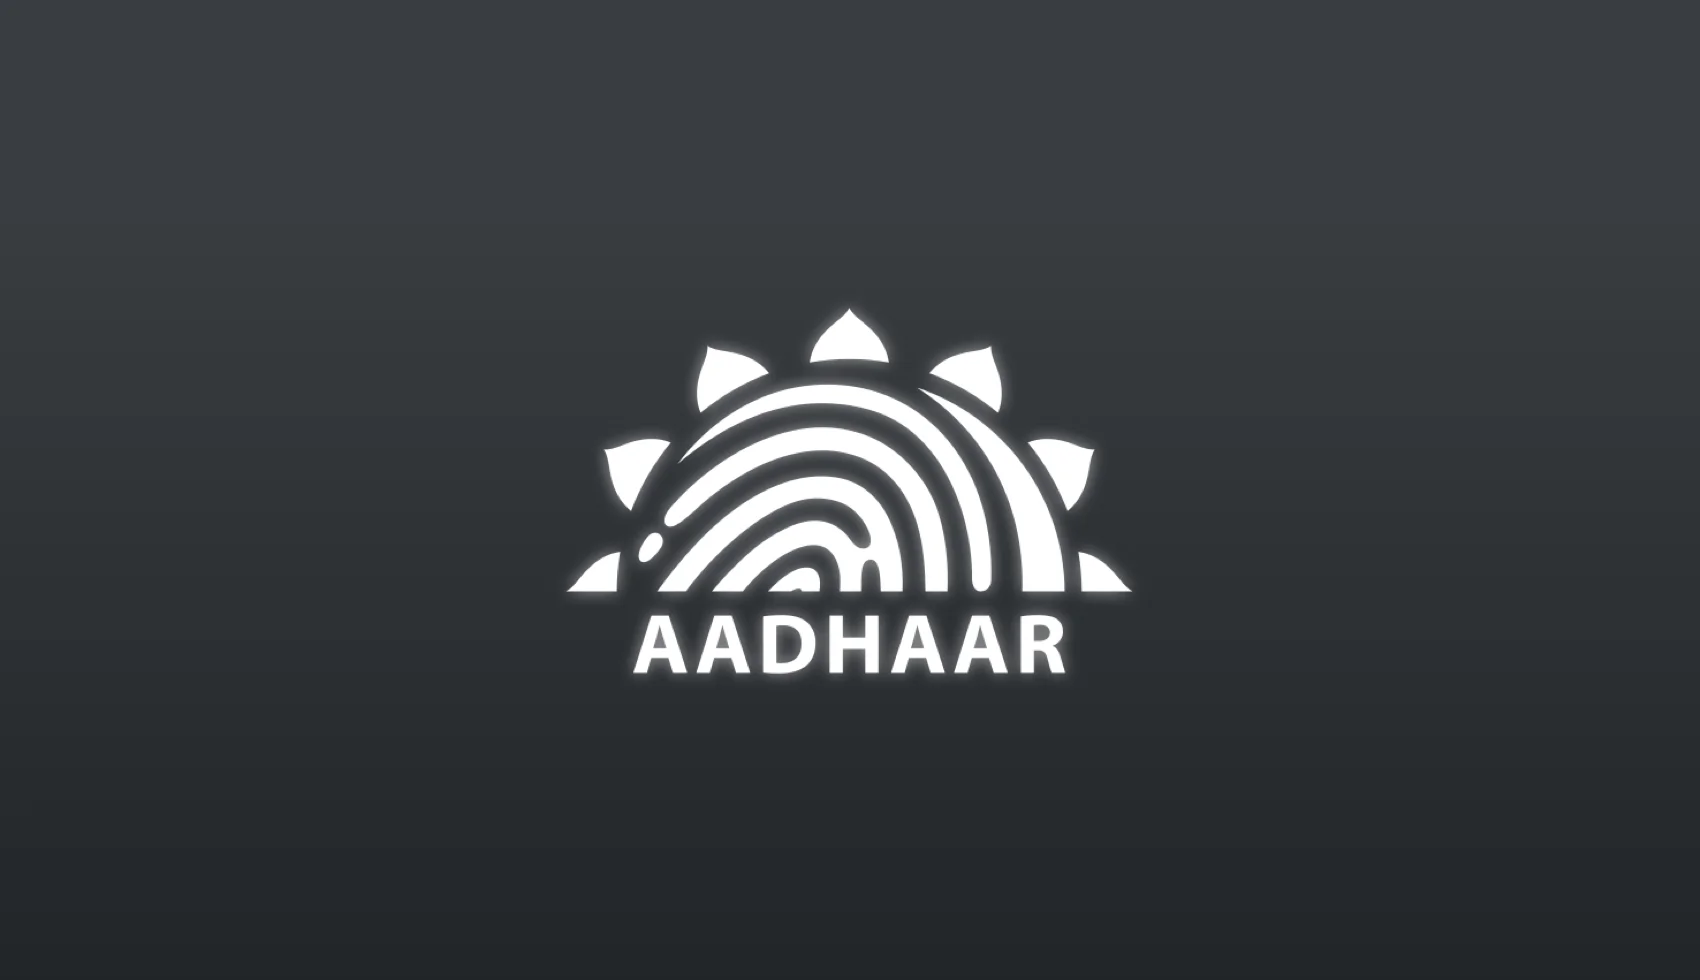 Link Aadhaar with Your Demat Account